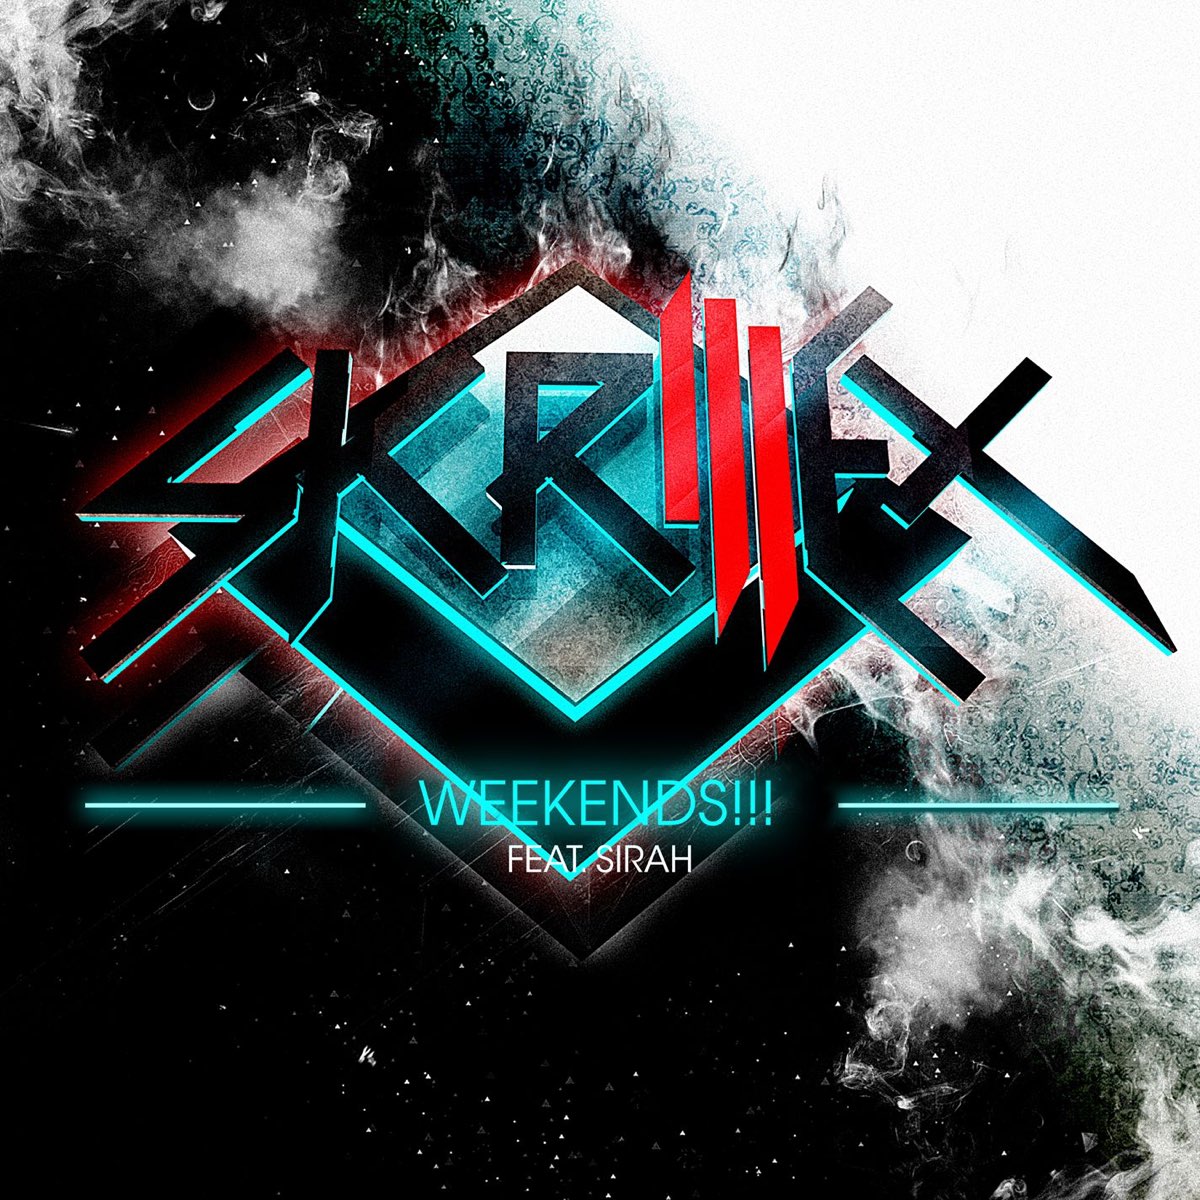 Skrillex ft. featuring Sirah Weekends!!! cover artwork